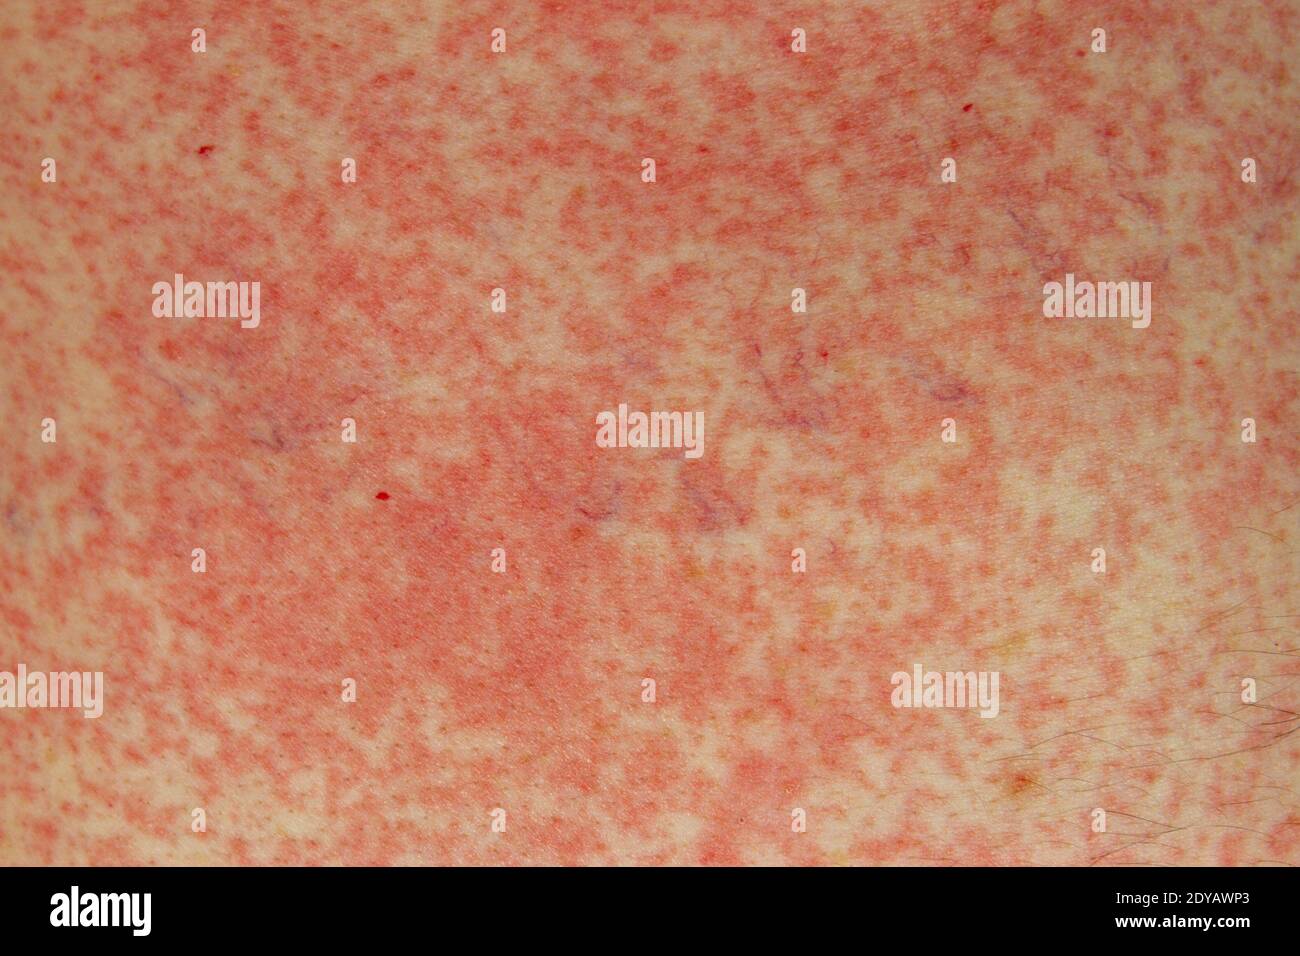 Une réaction allergique (effet secondaire) à la pénicilline (amoxicilline) sur la peau d'un homme blanc de 51 ans à Londres, Royaume-Uni. Banque D'Images